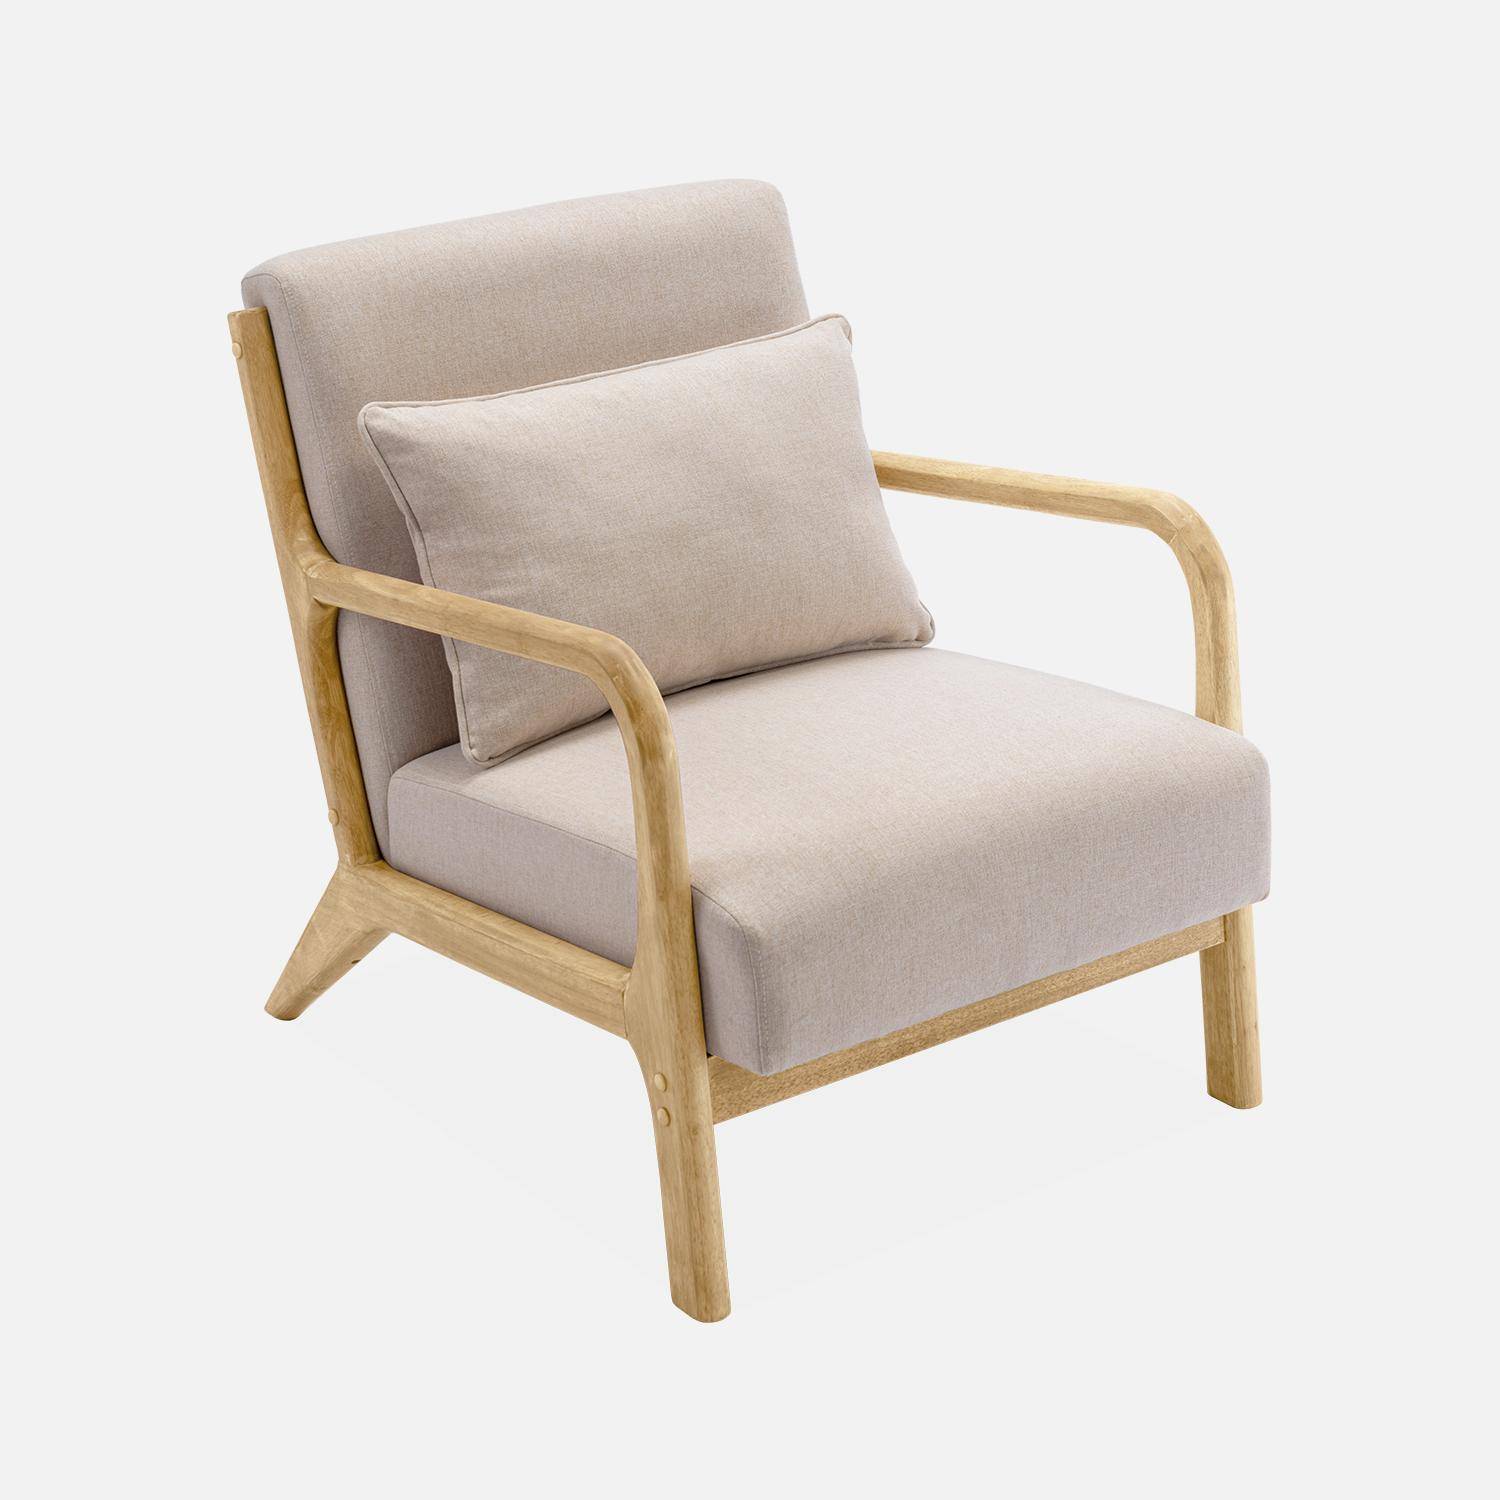 Poltrona de design em madeira e tecido, 1 assento reto fixo, pernas em bússola escandinavas, estrutura em madeira maciça, assento bege confortável,sweeek,Photo4